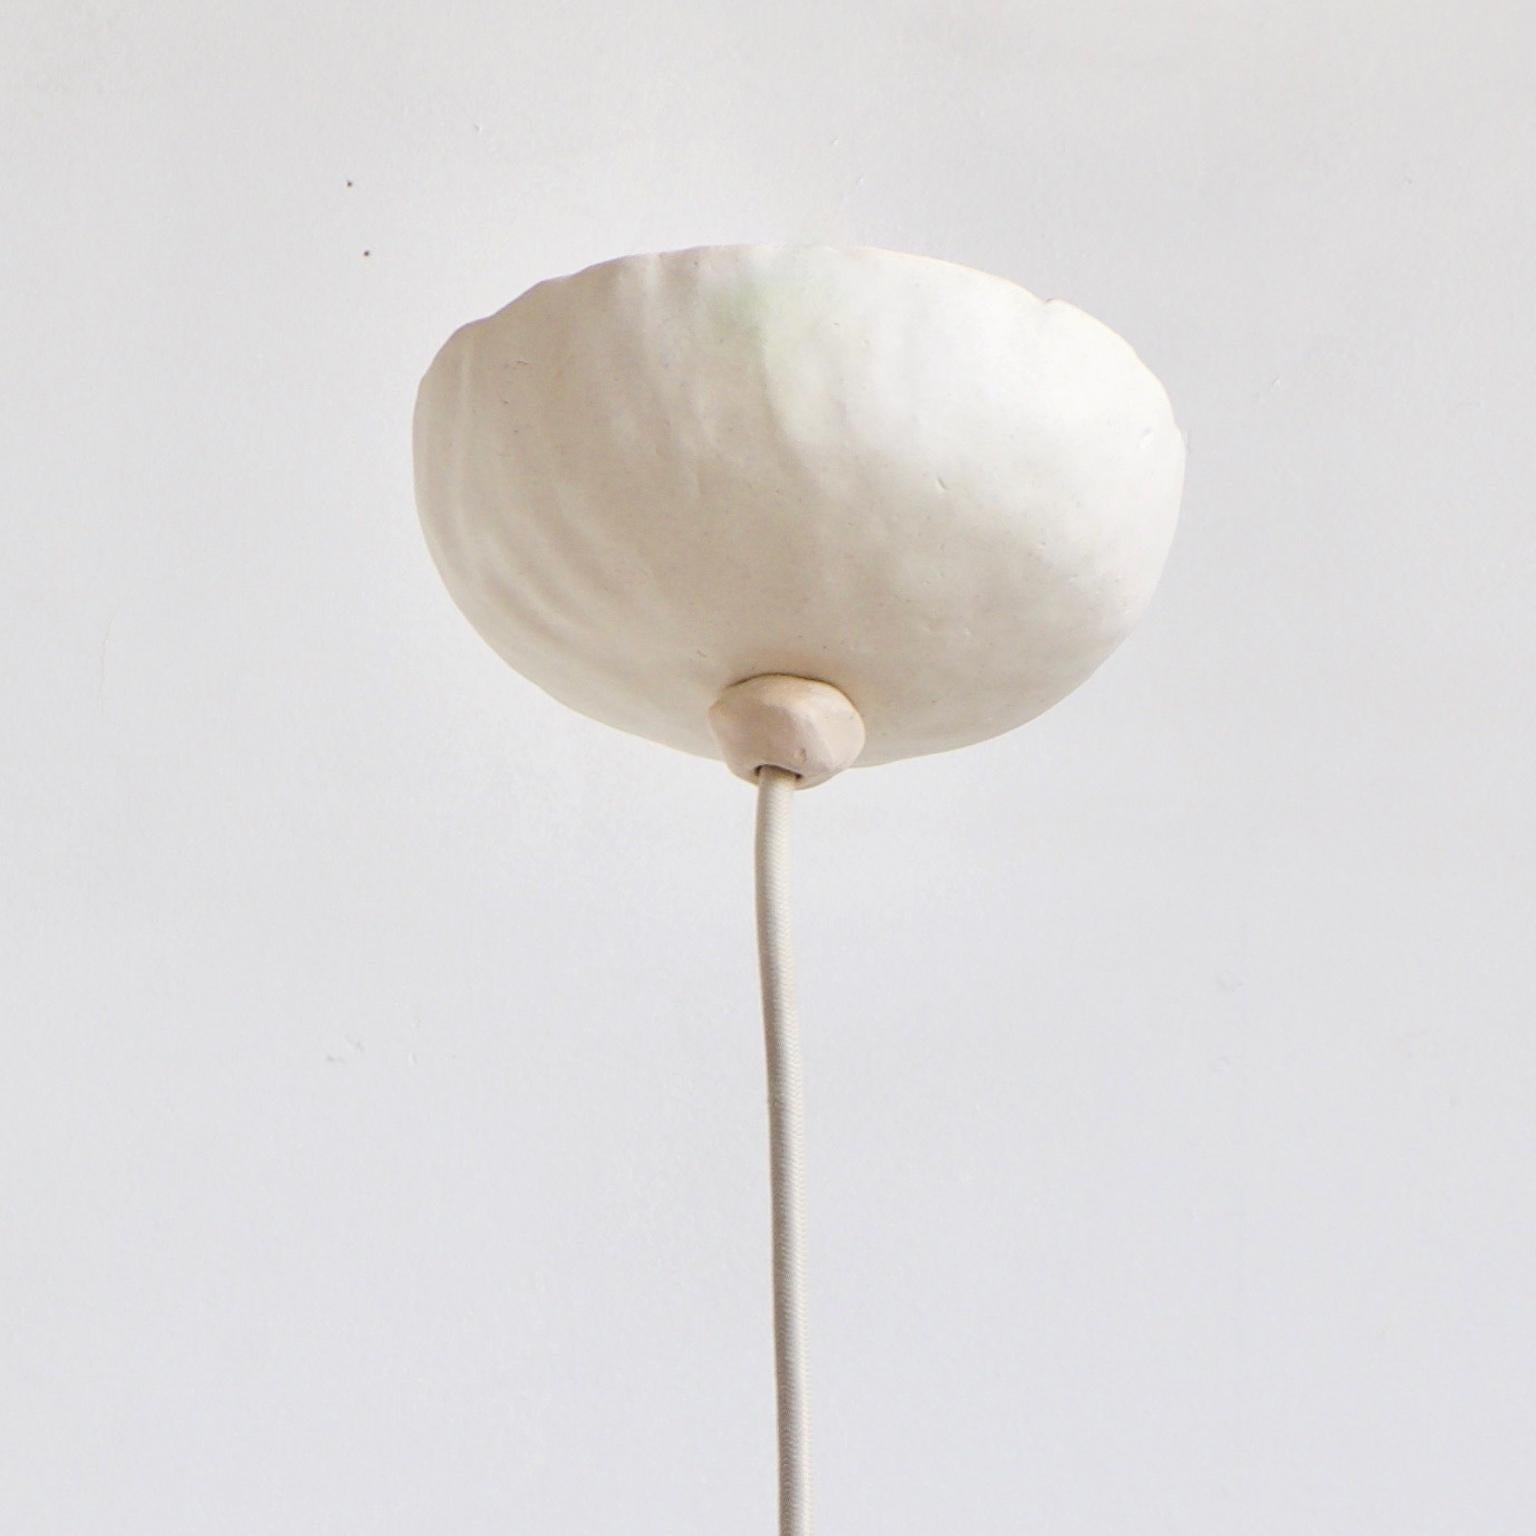 White Bowerbird single ist eine zeitgenössische, handgefertigte Hängeleuchte aus Keramik in mattweißer Glasur mit einem warmen Licht, das von einer runden, fröhlichen Form reflektiert wird. Die humorvolle, freundliche Form setzt einen spielerischen